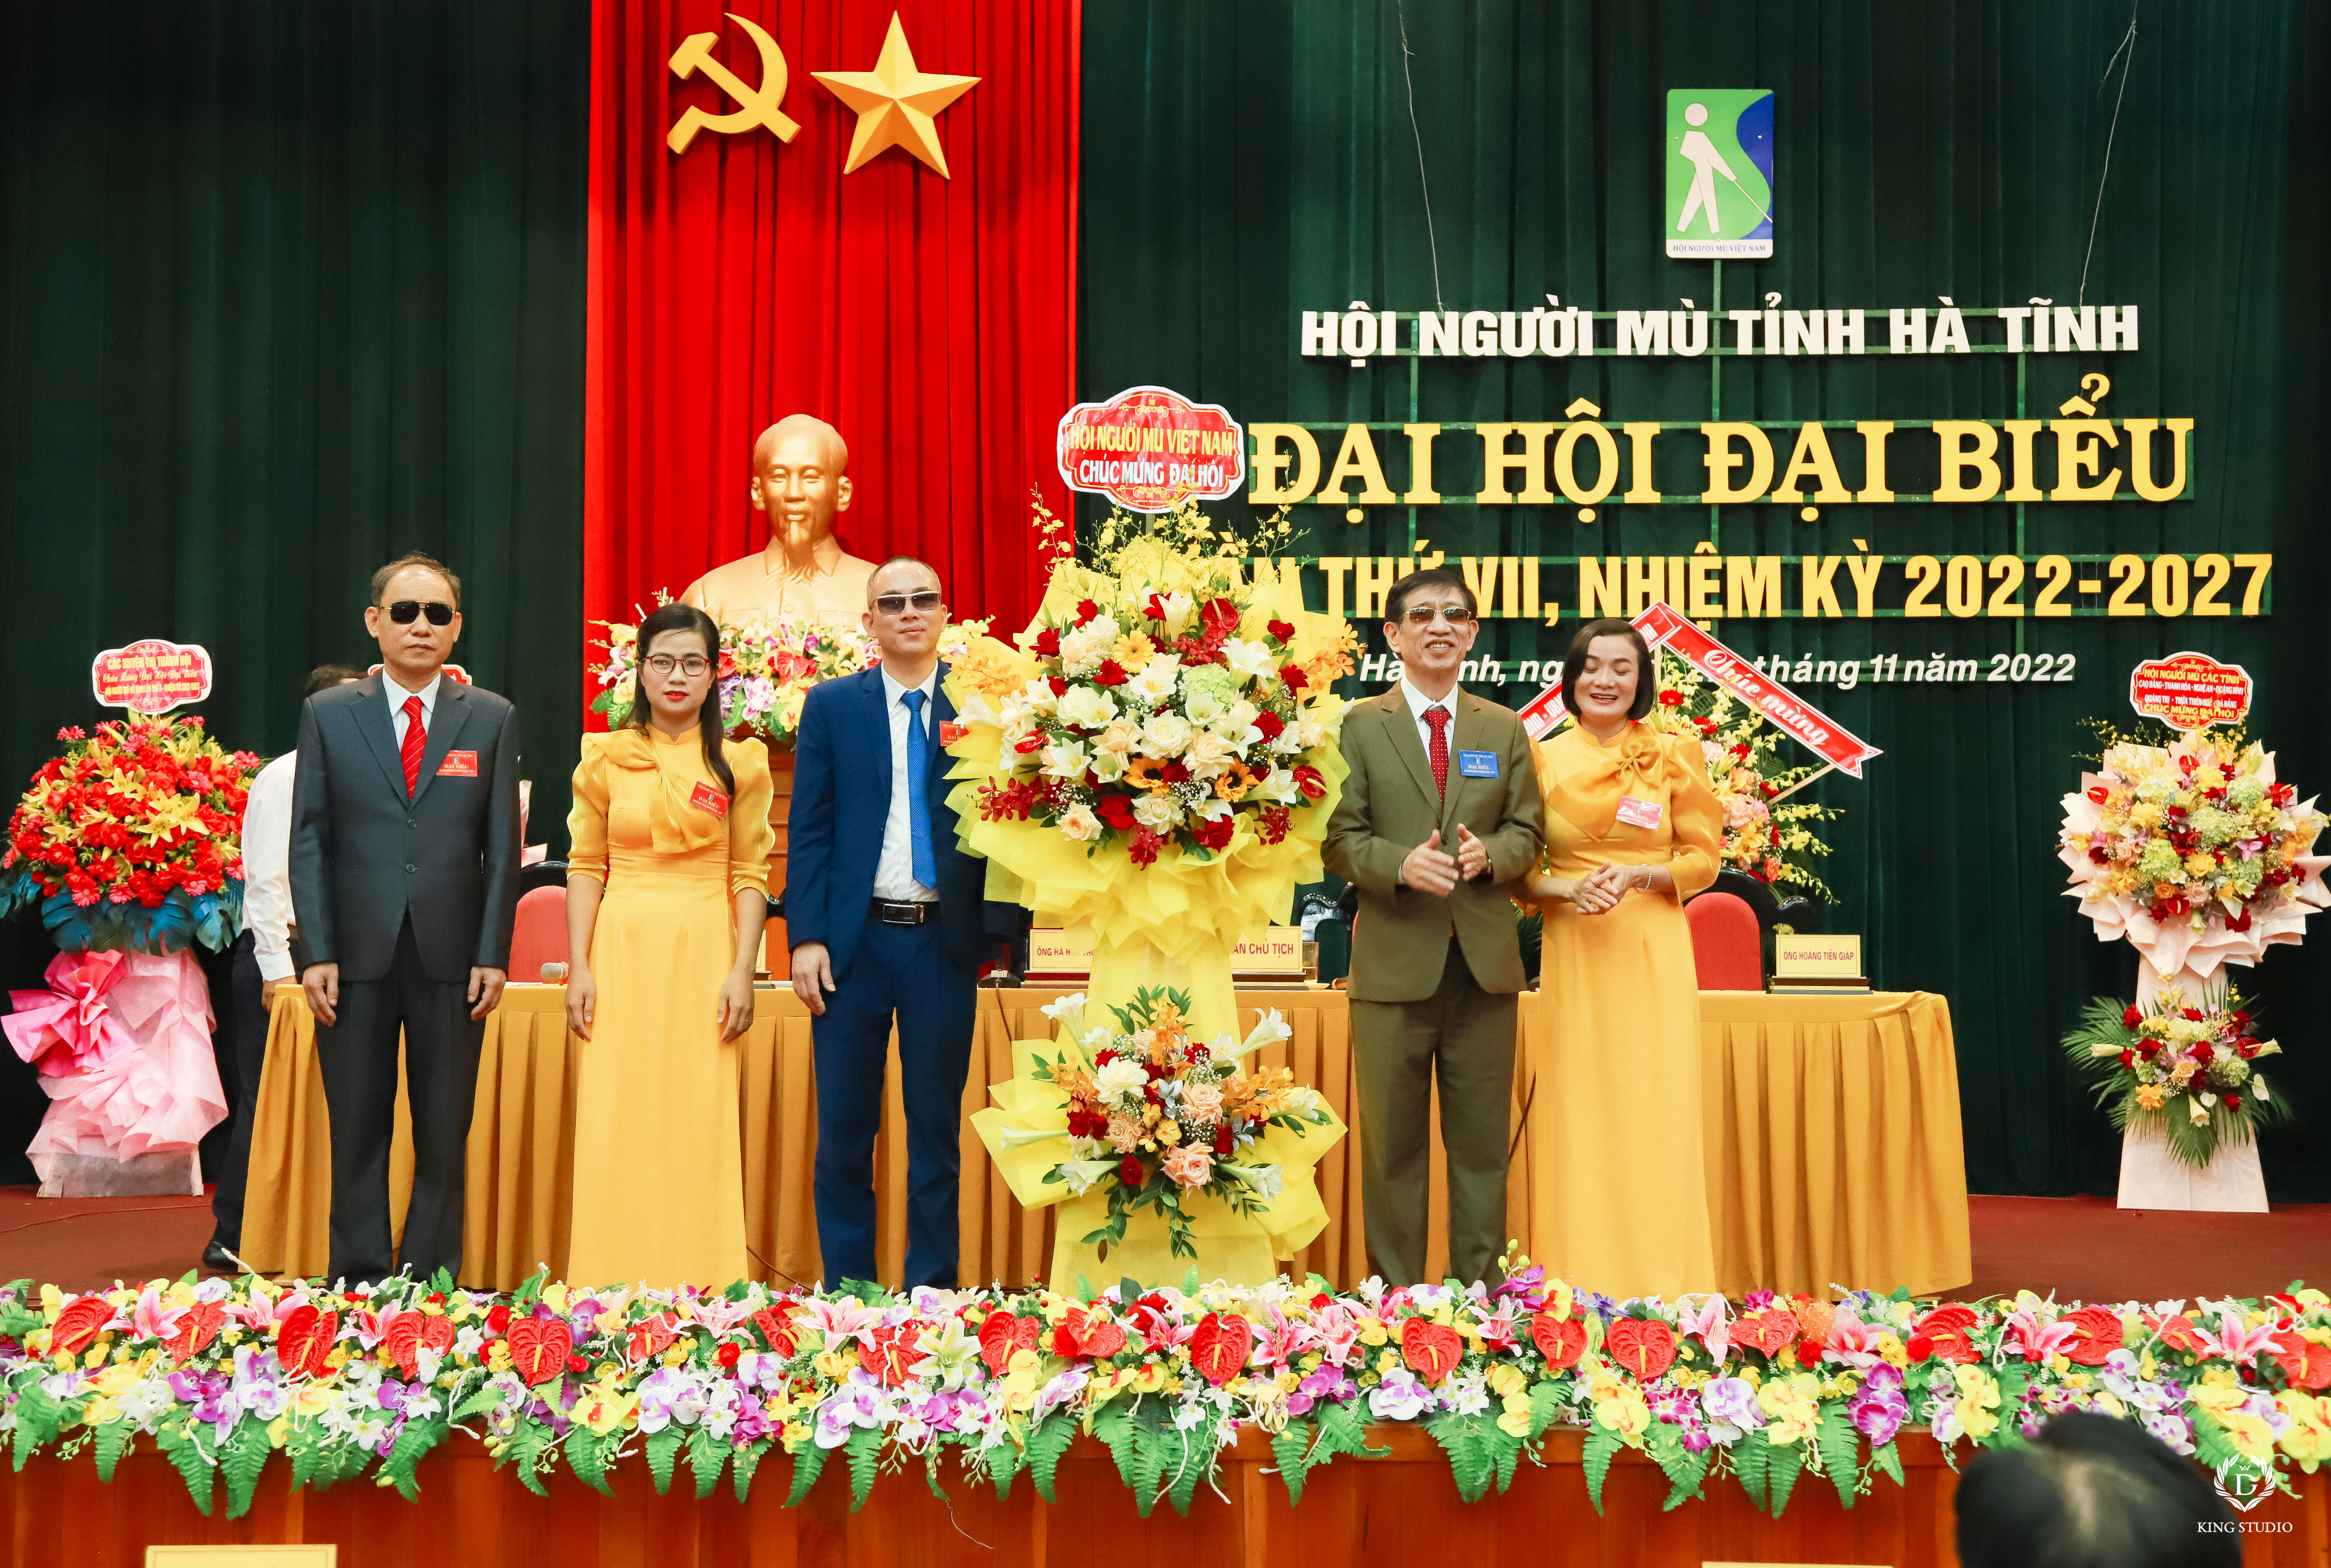 Hình ảnh: Đại hội đại biểu Hội Người mù tỉnh Hà Tĩnh lần thứ VII, nhiệm kỳ 2022 -2027